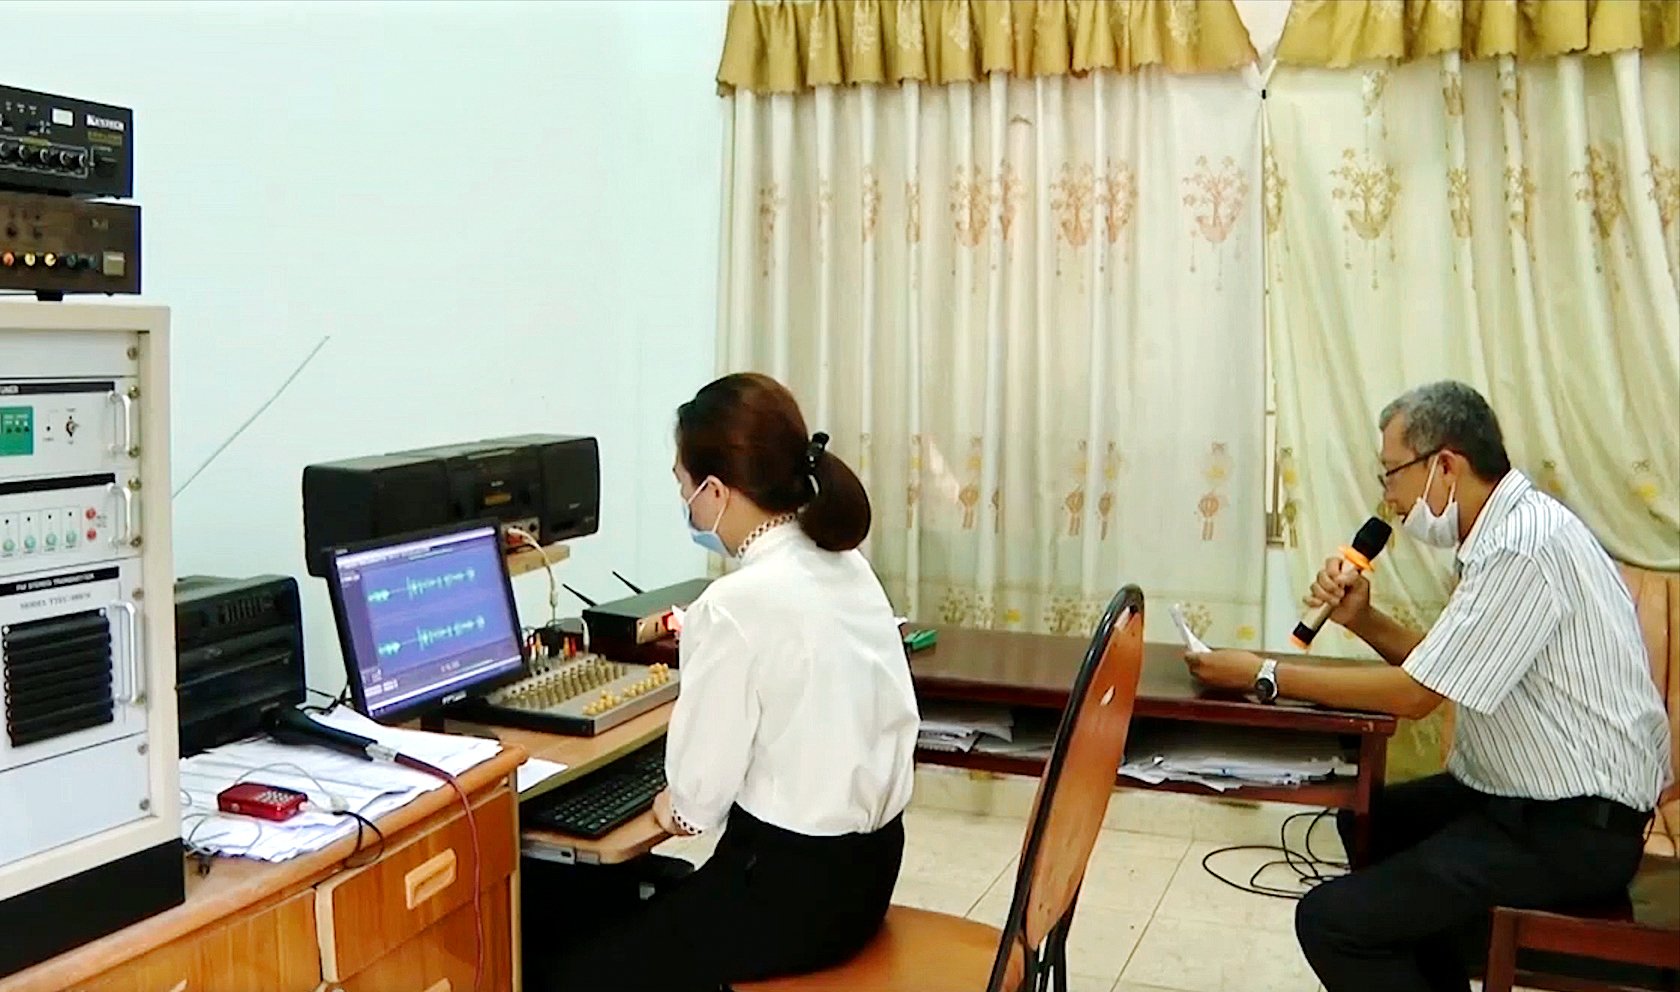 Ông Nguyễn Xuân Tường, Công chức Văn hóa-Xã hội UBND xã Hòa Long đang đọc các thông báo, thu âm chuẩn bị bản tin trưa phát trên loa truyền thanh của xã.